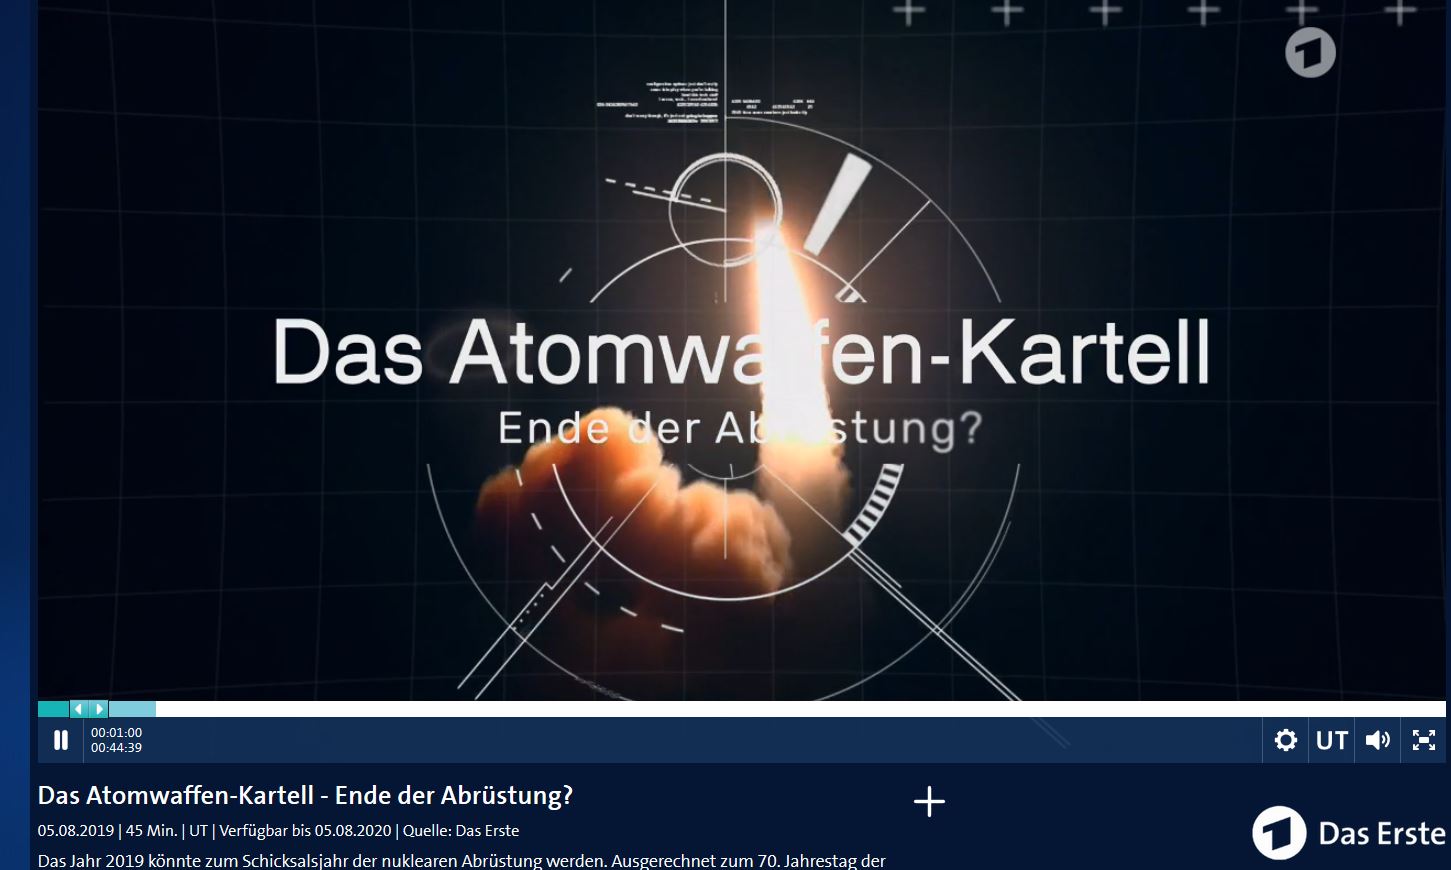 Atomarer Rückbau: Für AKW Brunsbüttel genehmigt – Für Isar 1 gerichtlich zugelassen